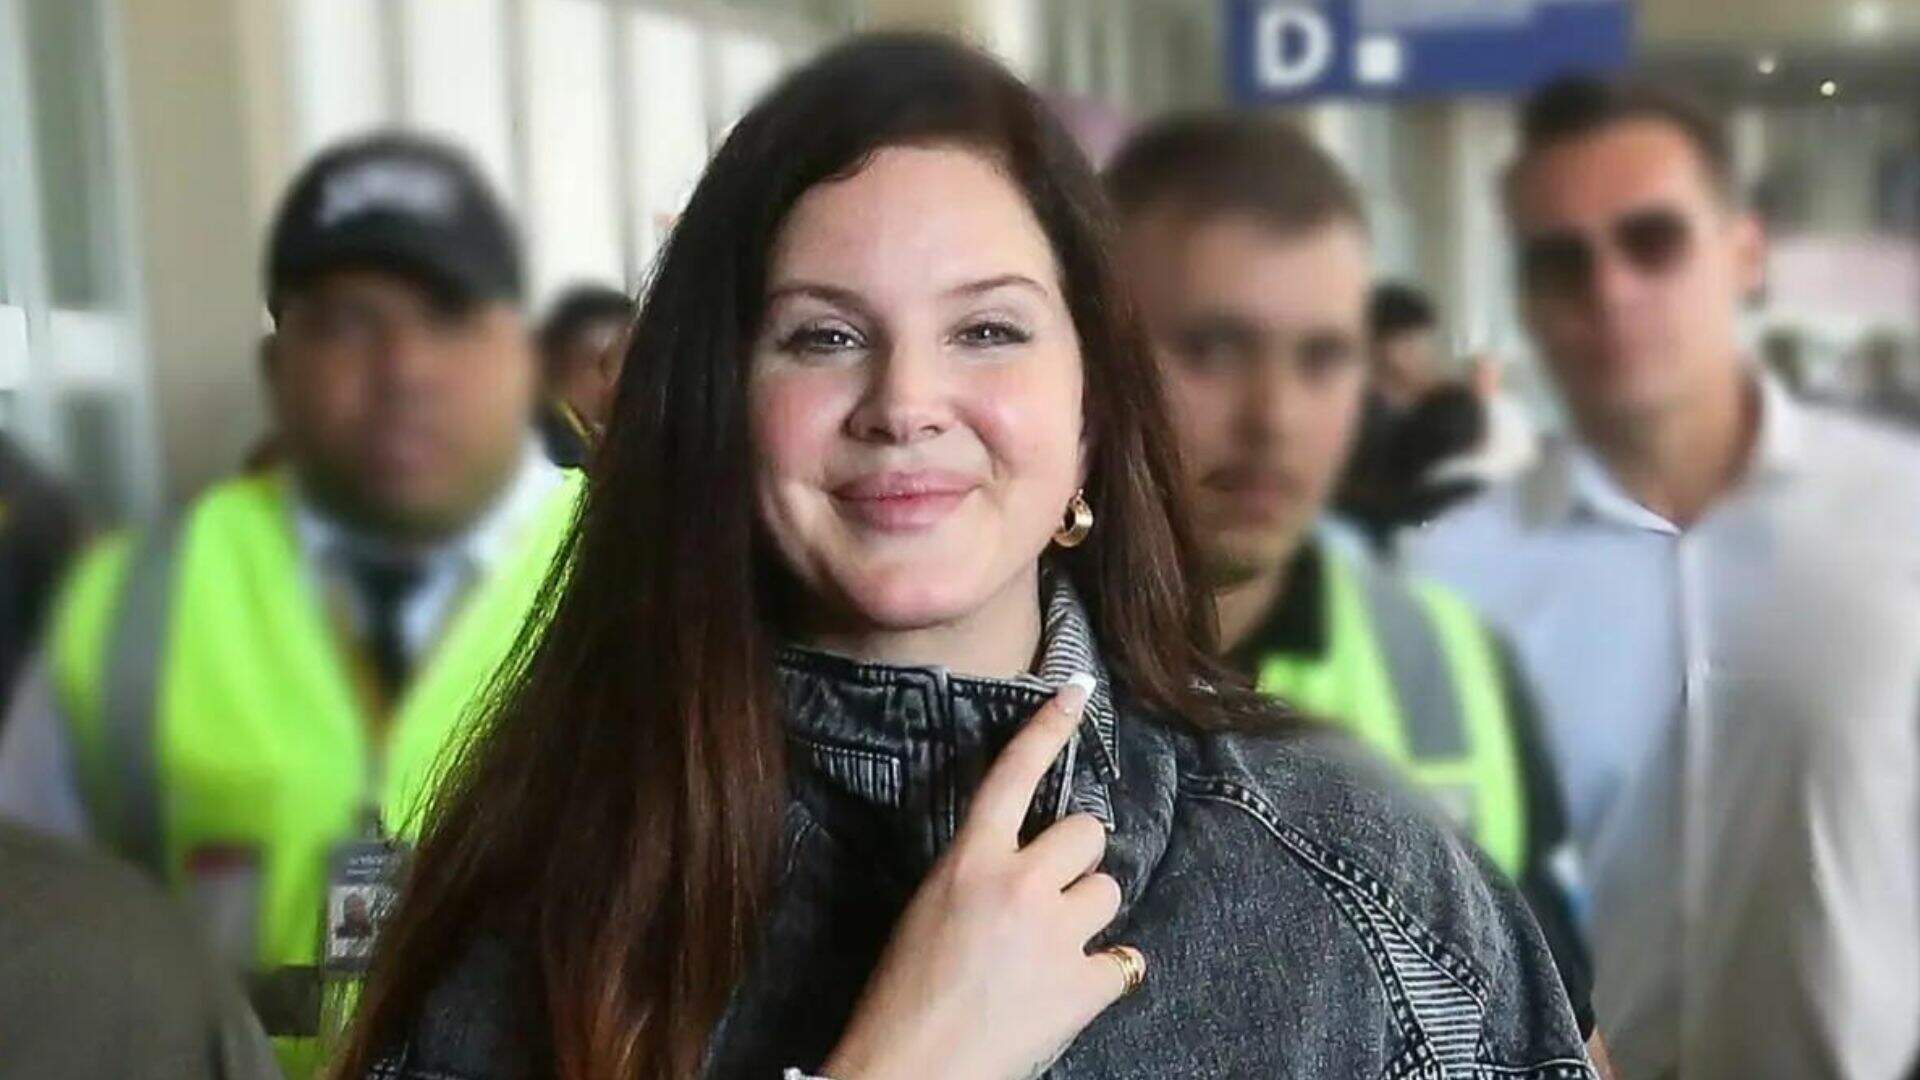 Lana Del Rey desembarca no Brasil, tem atitude inesperada com fãs em aeroporto e é aclamada - Metropolitana FM